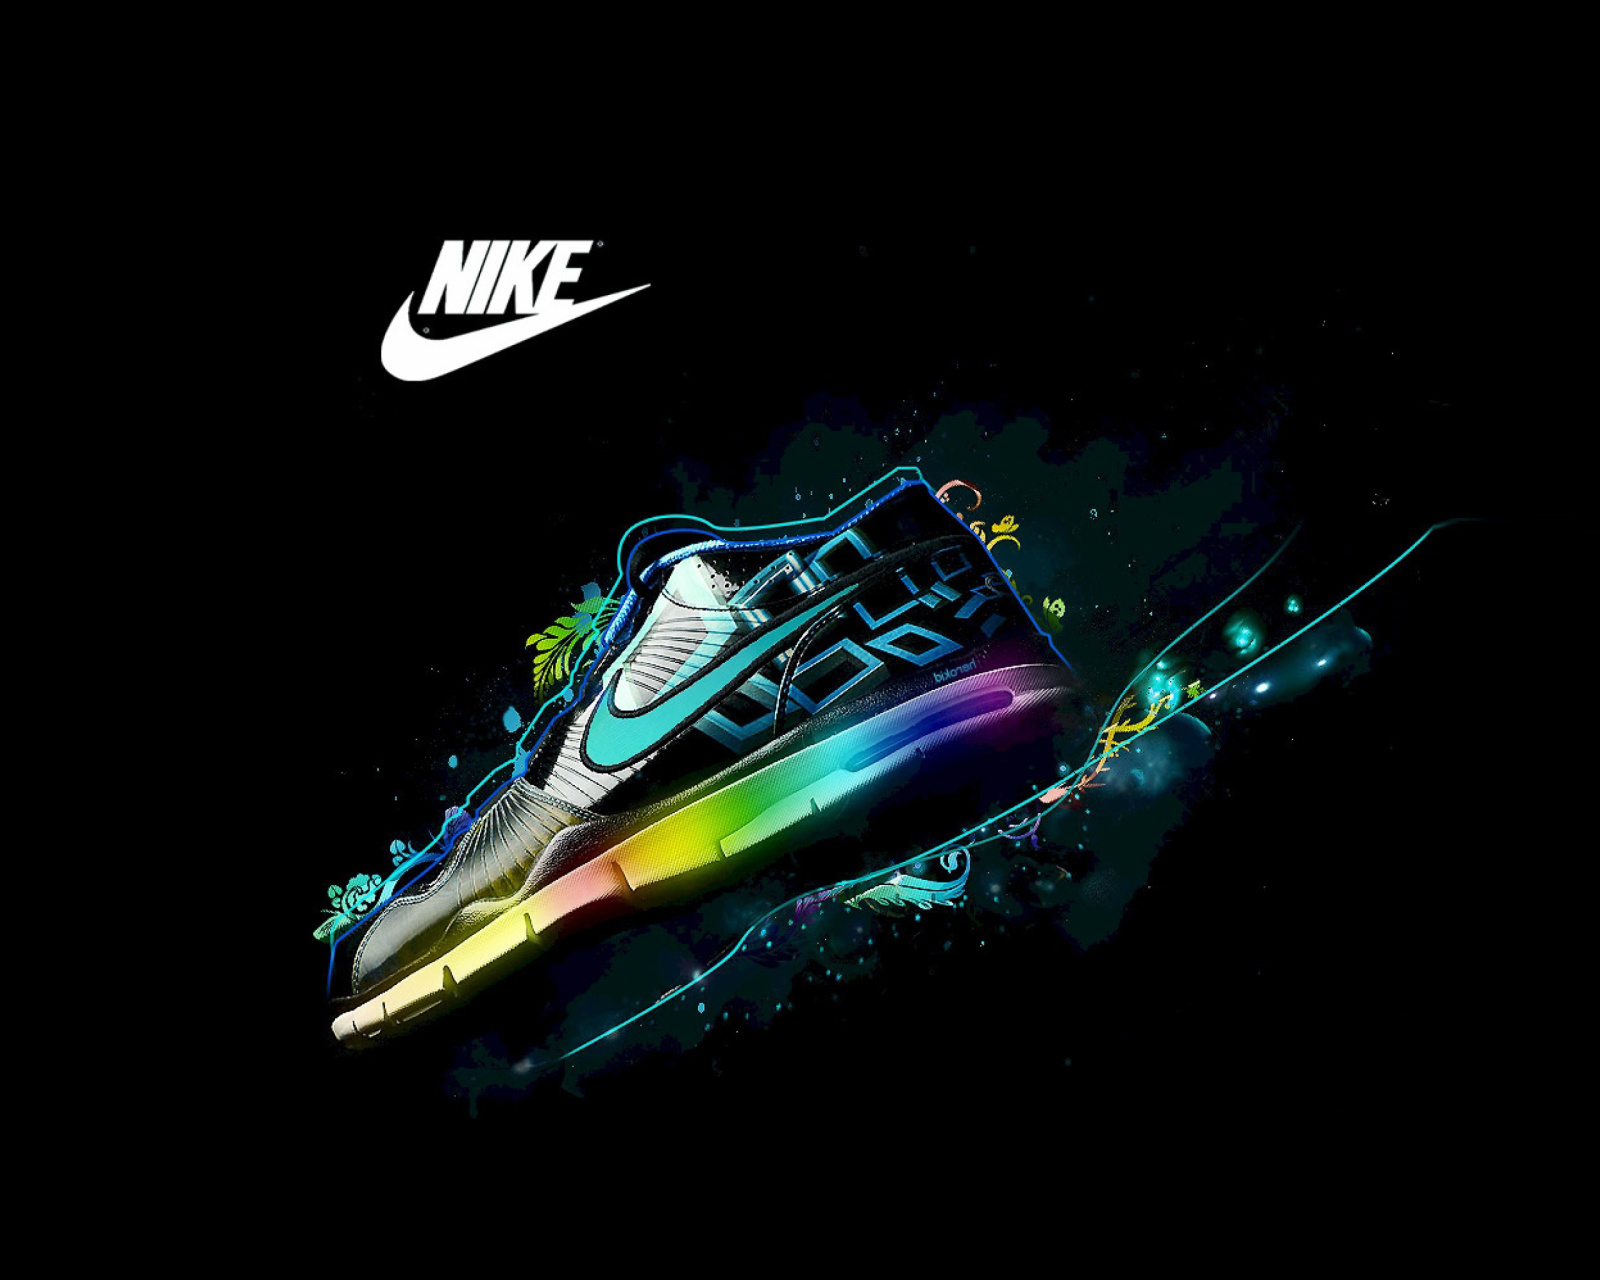 Обои Nike Logo and Nike Air Shoes 1600x1280